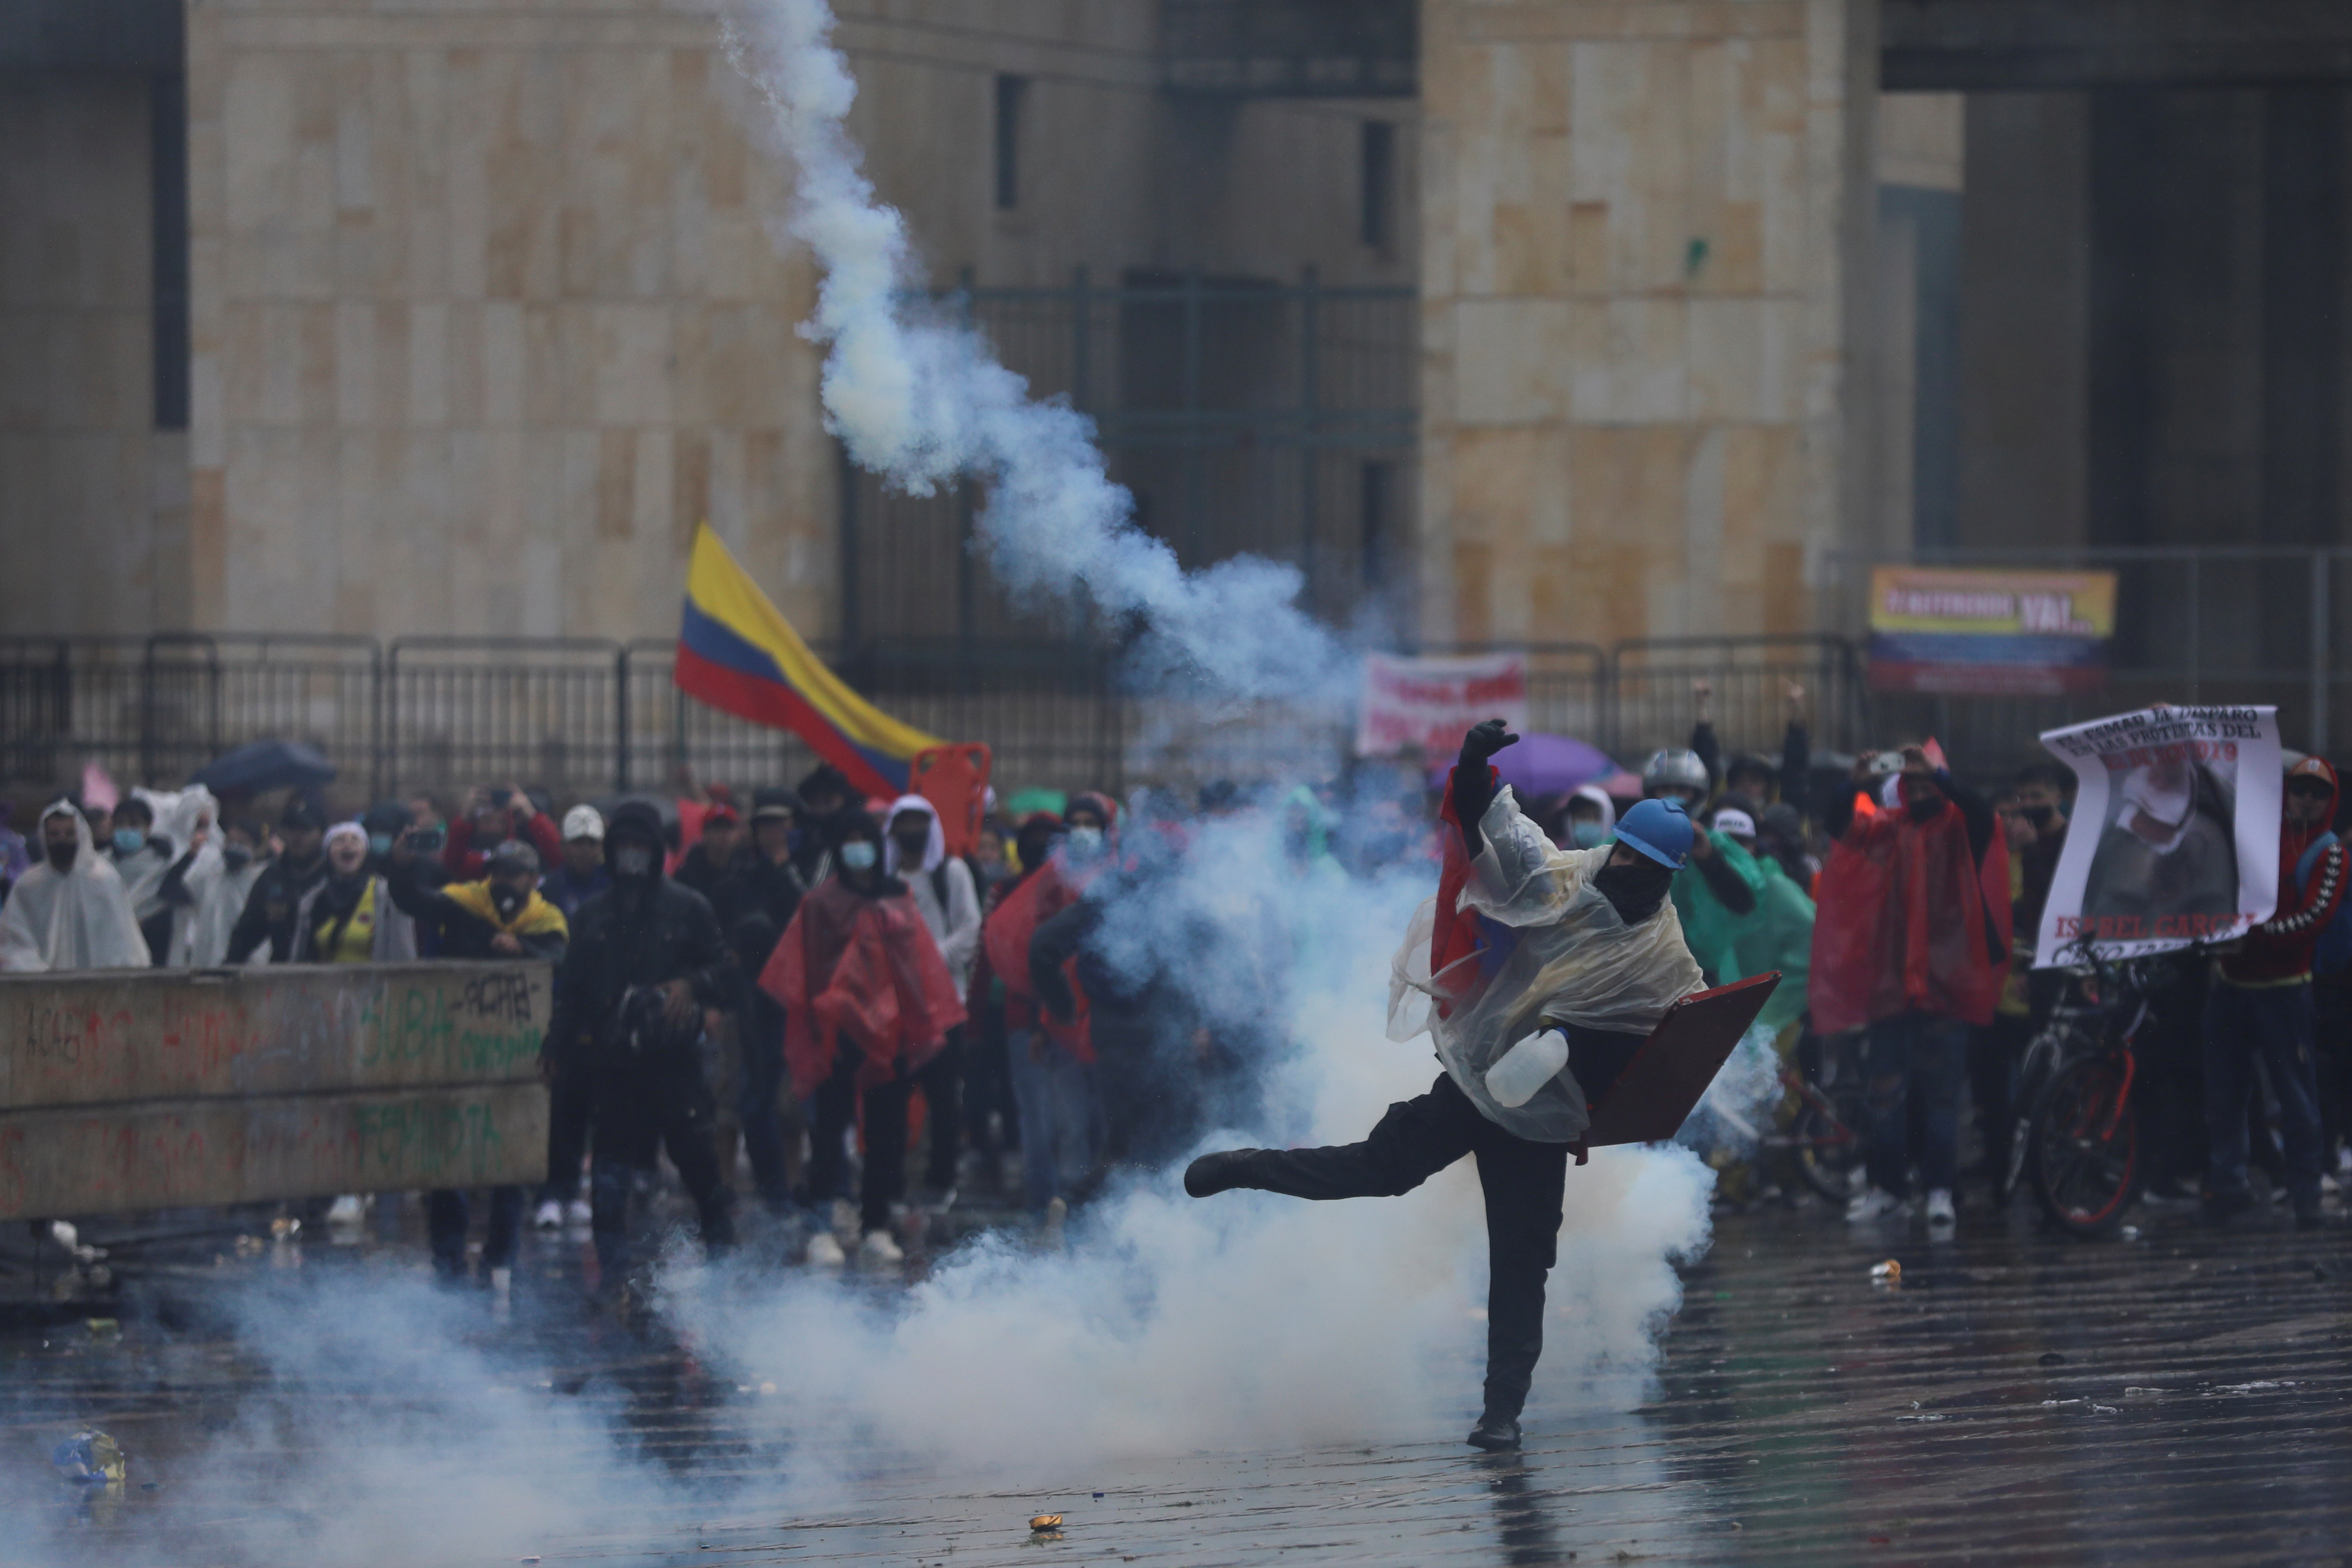 Un manifestante lanza un objeto durante una protesta contra la pobreza y la violencia policial en Bogotá, Colombia, este 5 de mayo de 2021 (Reuters/ Luisa González)